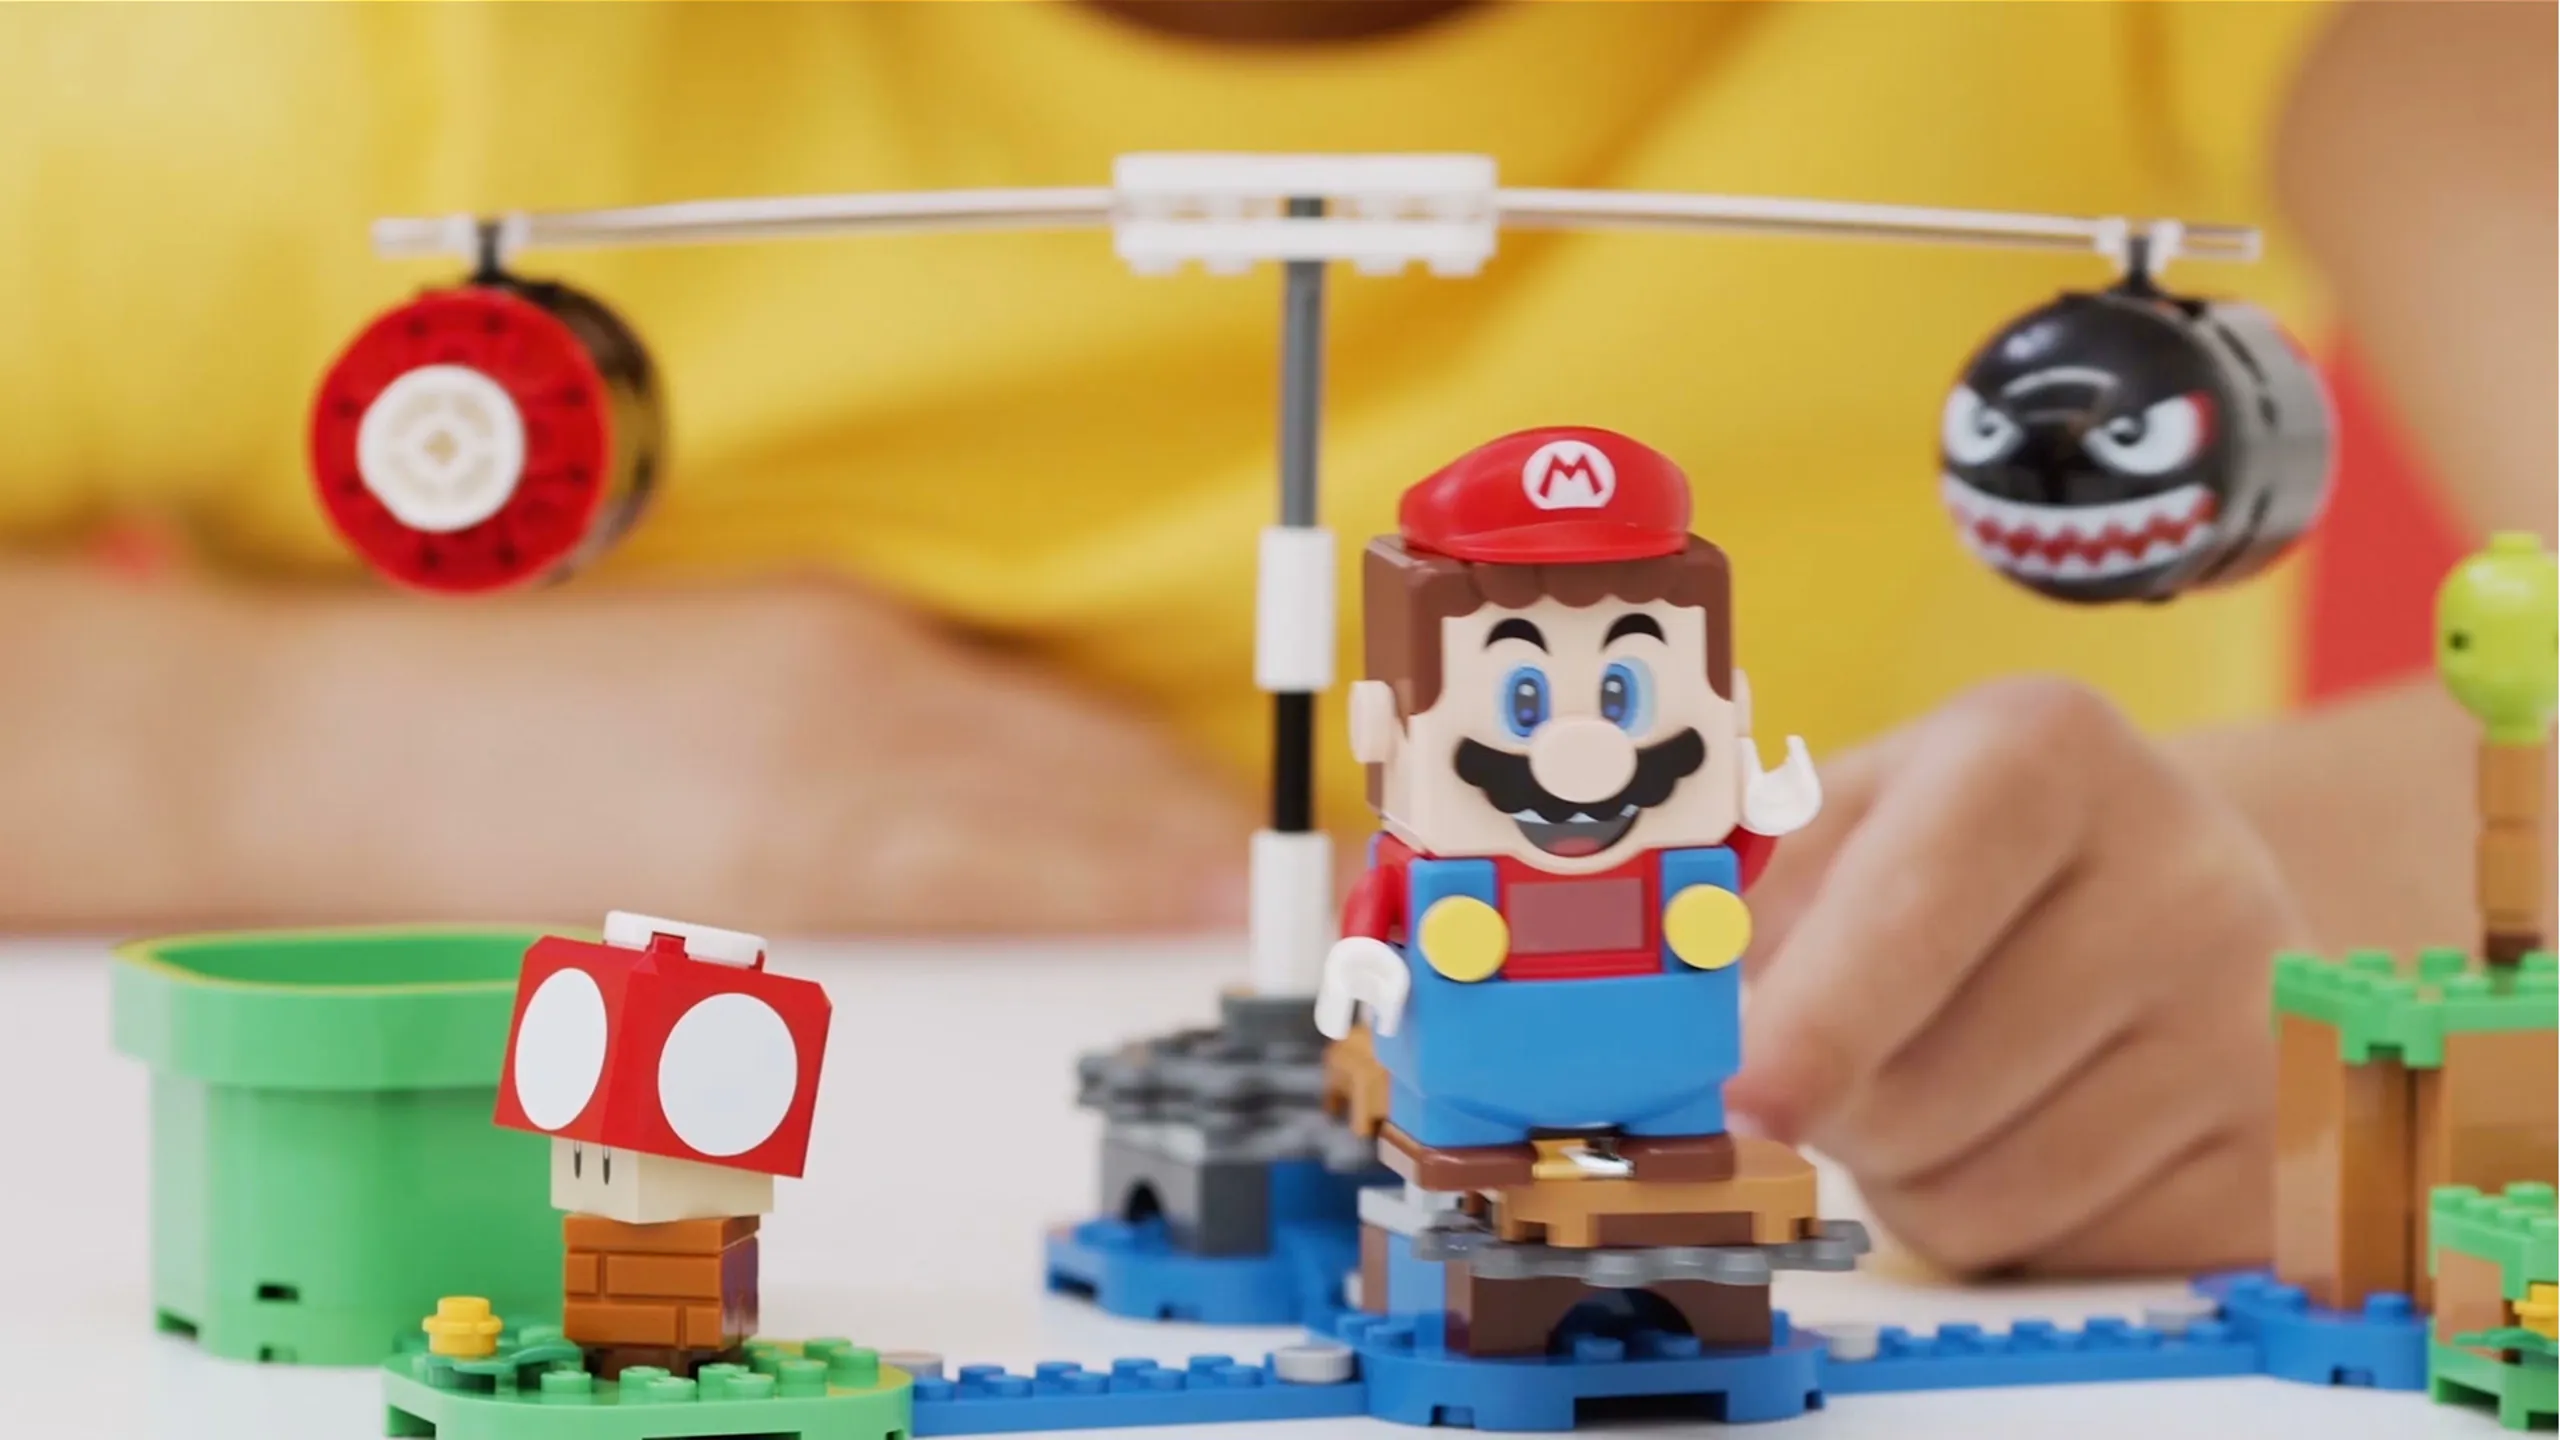 LEGO® Super Mario™ - LEGO.com para niños